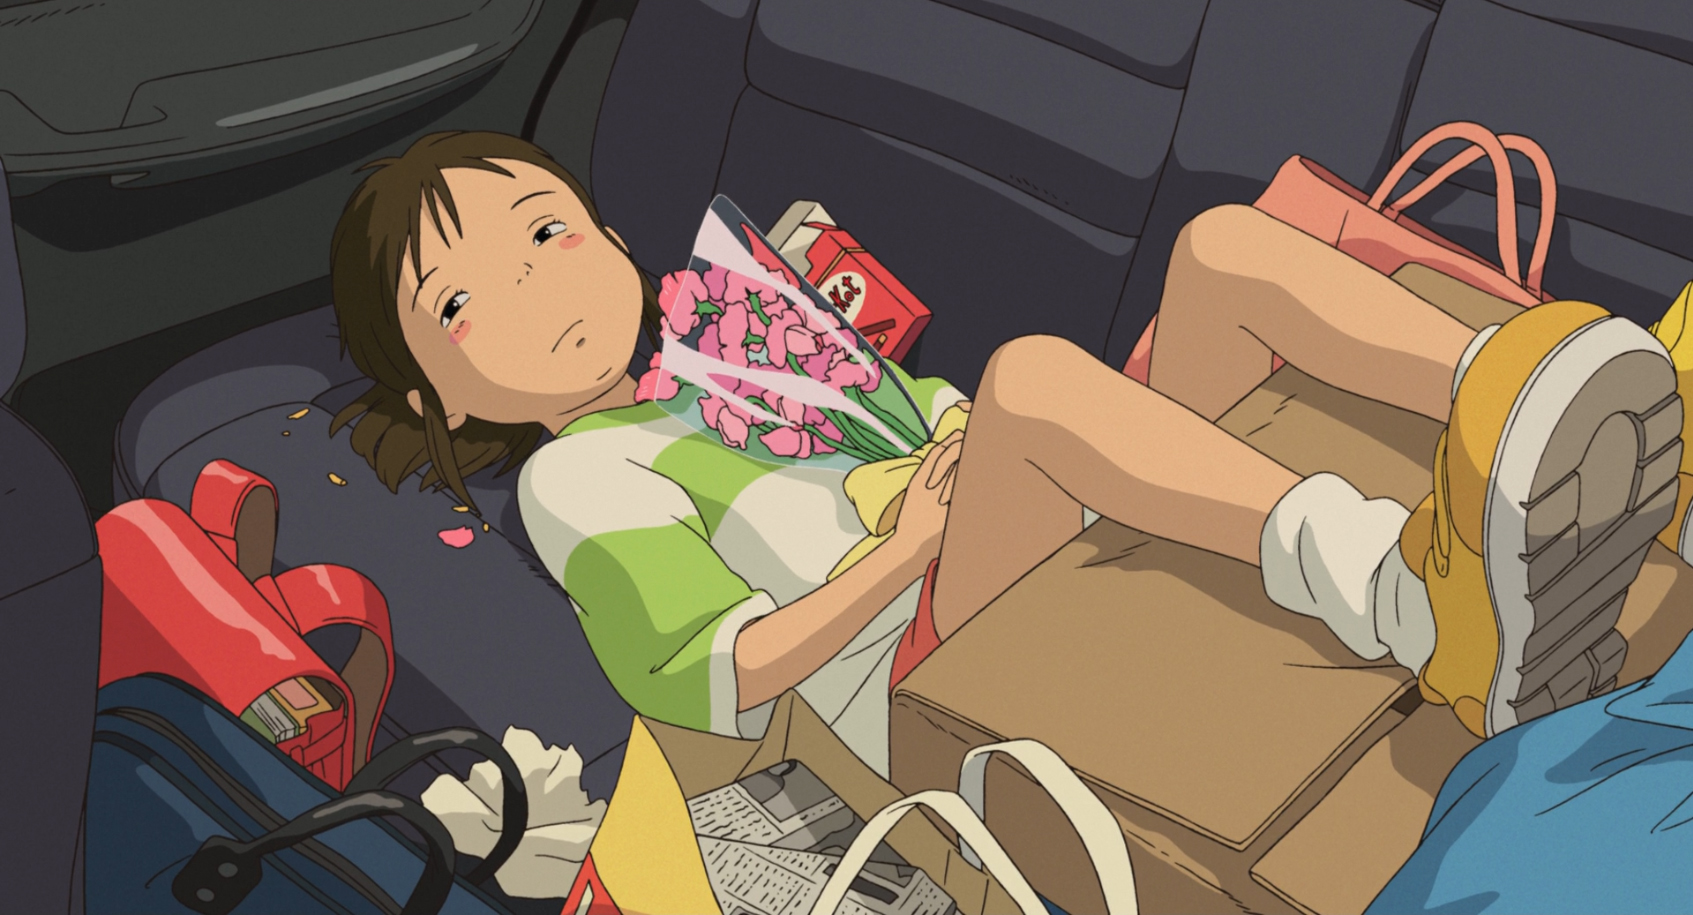 Imagem do filme de animação “A Viagem de Chihiro”. A cena se passa de dia. Ocupando quase toda a imagem, está Chihiro, uma garota asiática, de pele branca, bochechas rosadas e cabelos castanhos presos em um rabo de cavalo. Ela veste uma camisa branca e verde, um short vermelho e tênis amarelos. Ela está deitada no banco de trás de um carro, que está abarrotado de malas e sacolas, com os pés apoiados em uma grande caixa de papelão. A menina olha para o lado, triste e melancólica, enquanto segura com as duas mãos um buquê de flores rosadas, pressionando-as contra seu peito.